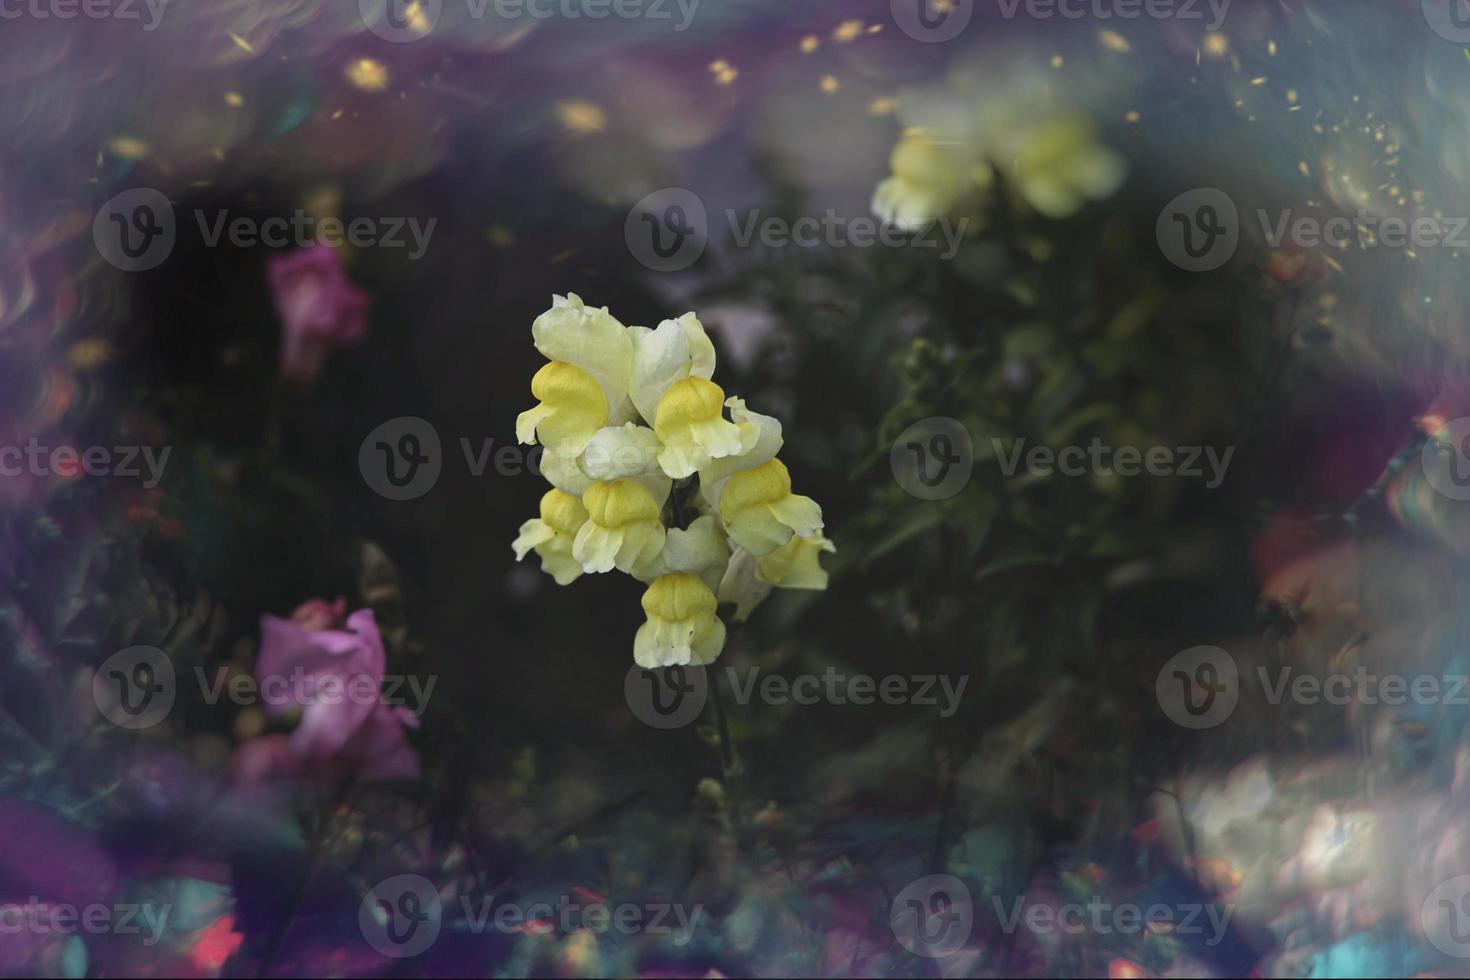 été coloré fleurs de les Lions jardin dans ensoleillement avec bokeh photo